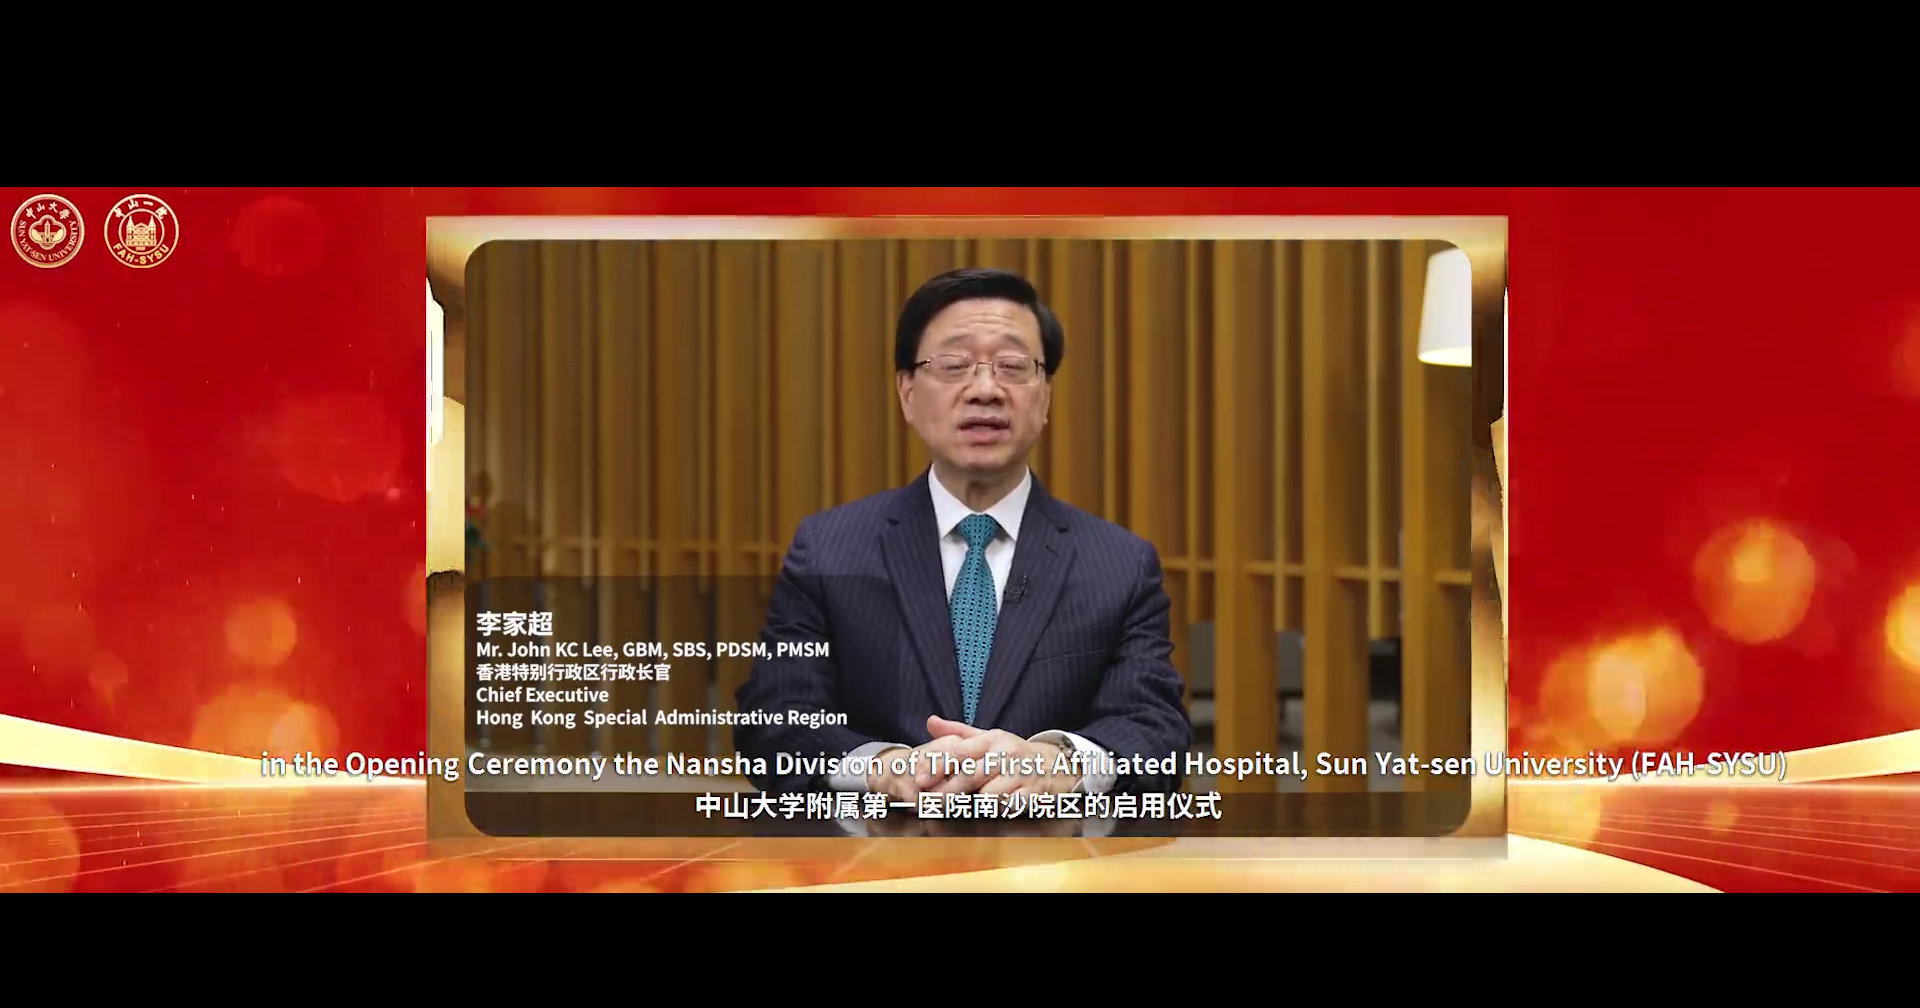 ▲香港特别行政区行政长官李家超先生通过视频表示祝贺.png